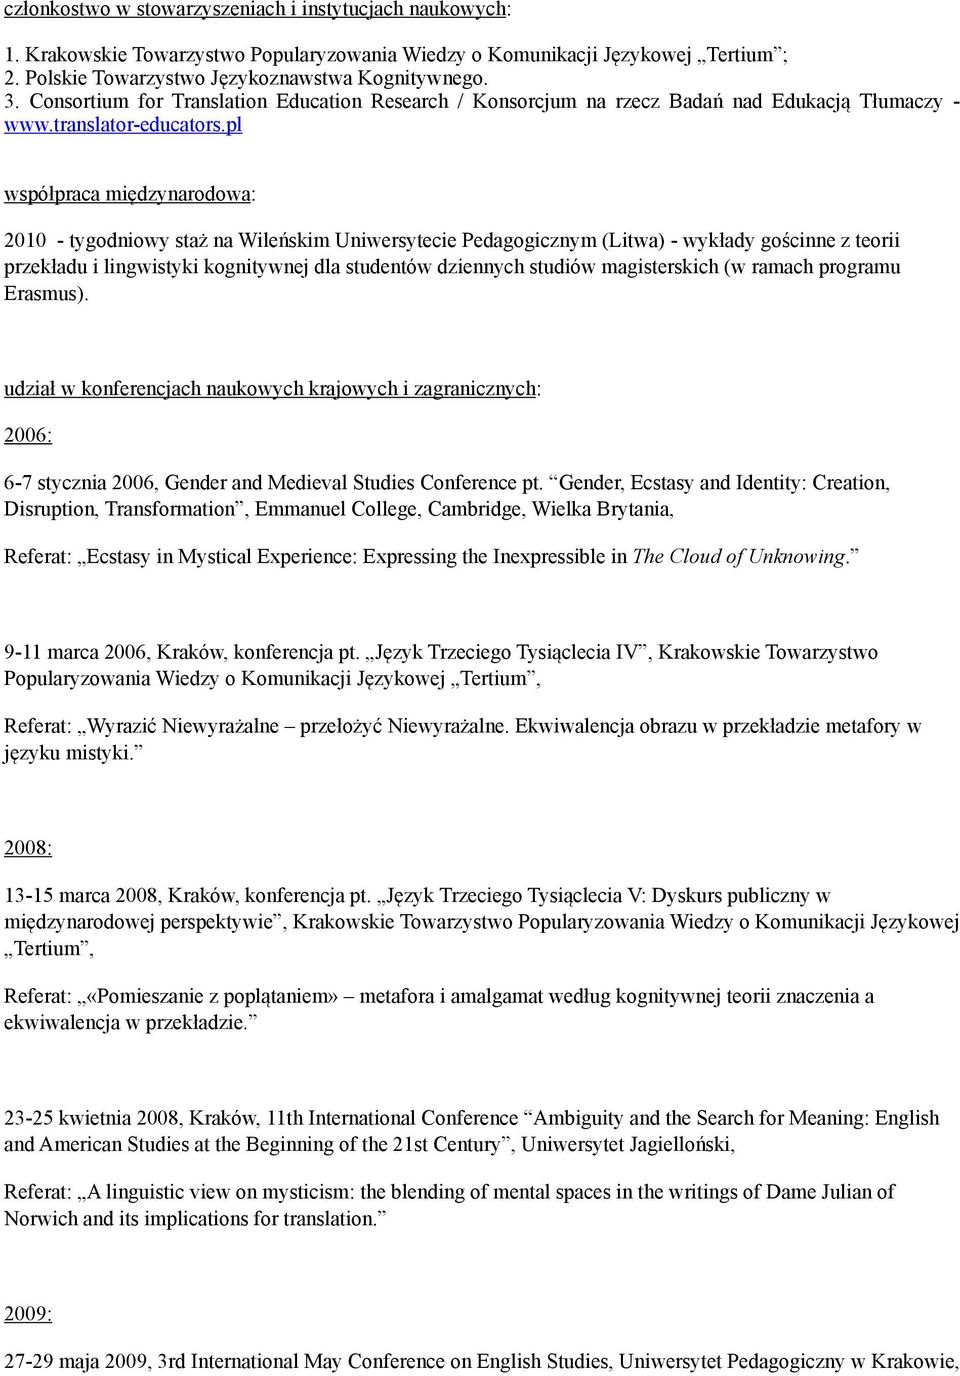 pl współpraca międzynarodowa: 2010 - tygodniowy staż na Wileńskim Uniwersytecie Pedagogicznym (Litwa) - wykłady gościnne z teorii przekładu i lingwistyki kognitywnej dla studentów dziennych studiów